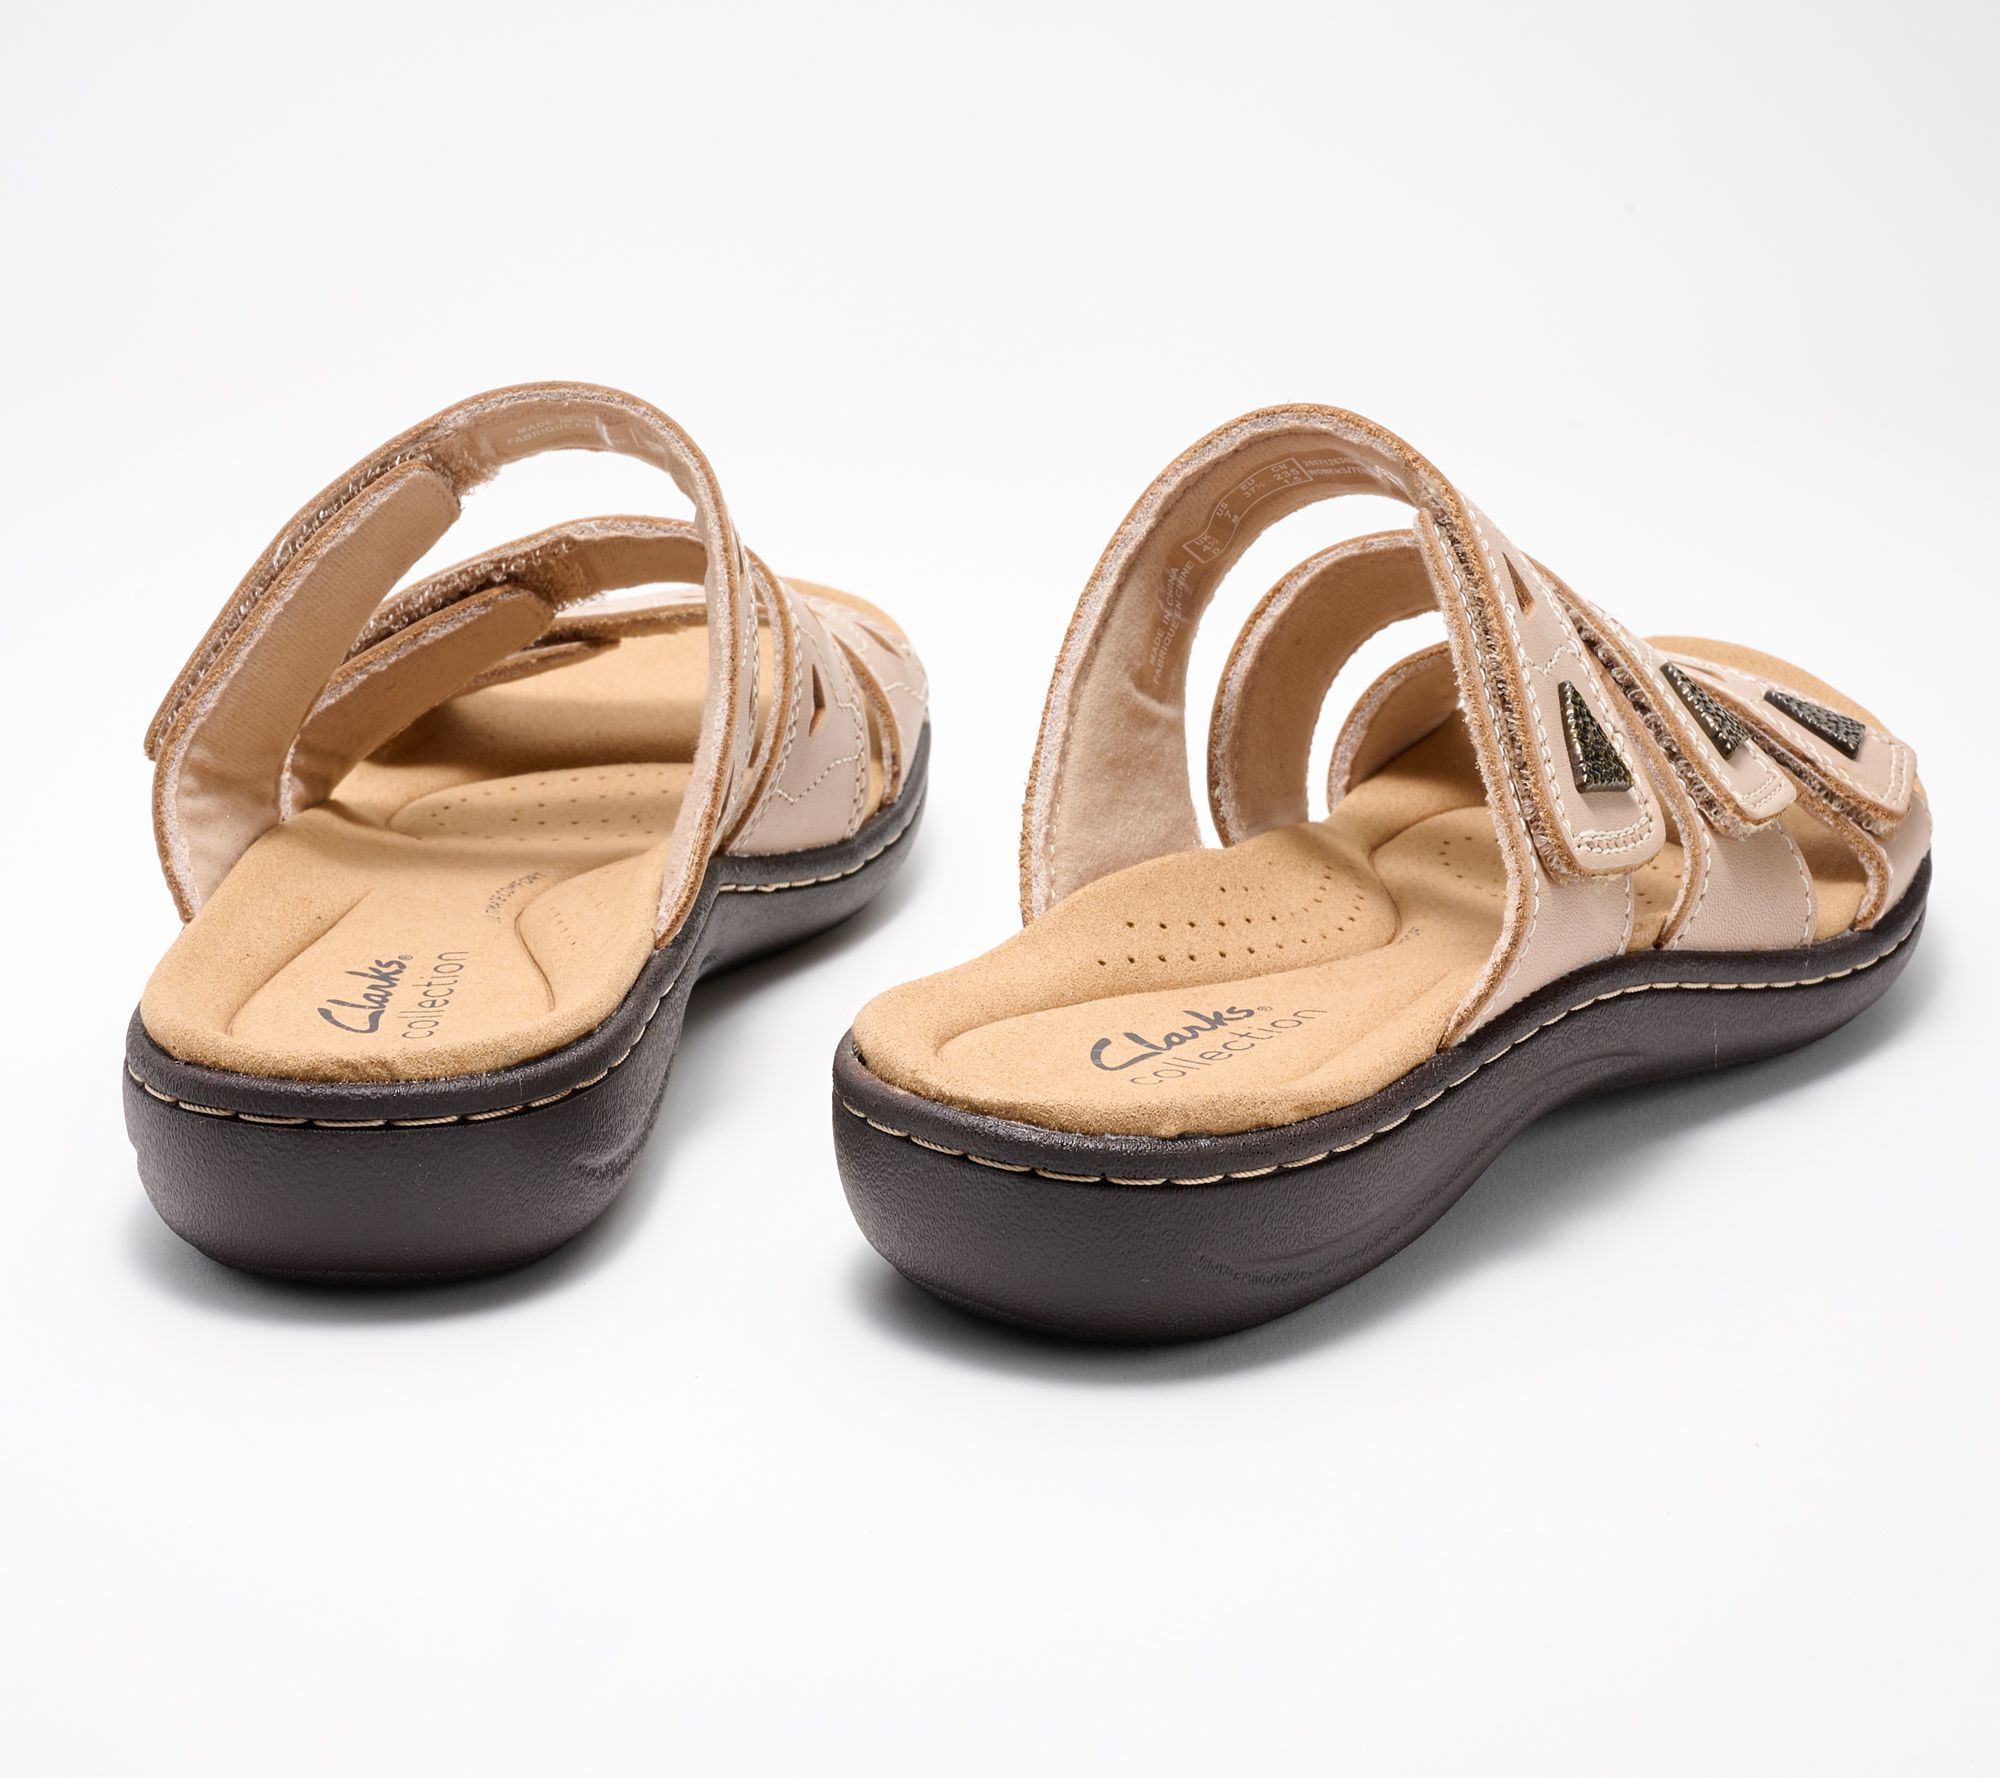 Clarks Shoes, Sandals, & Slides, Shop Now